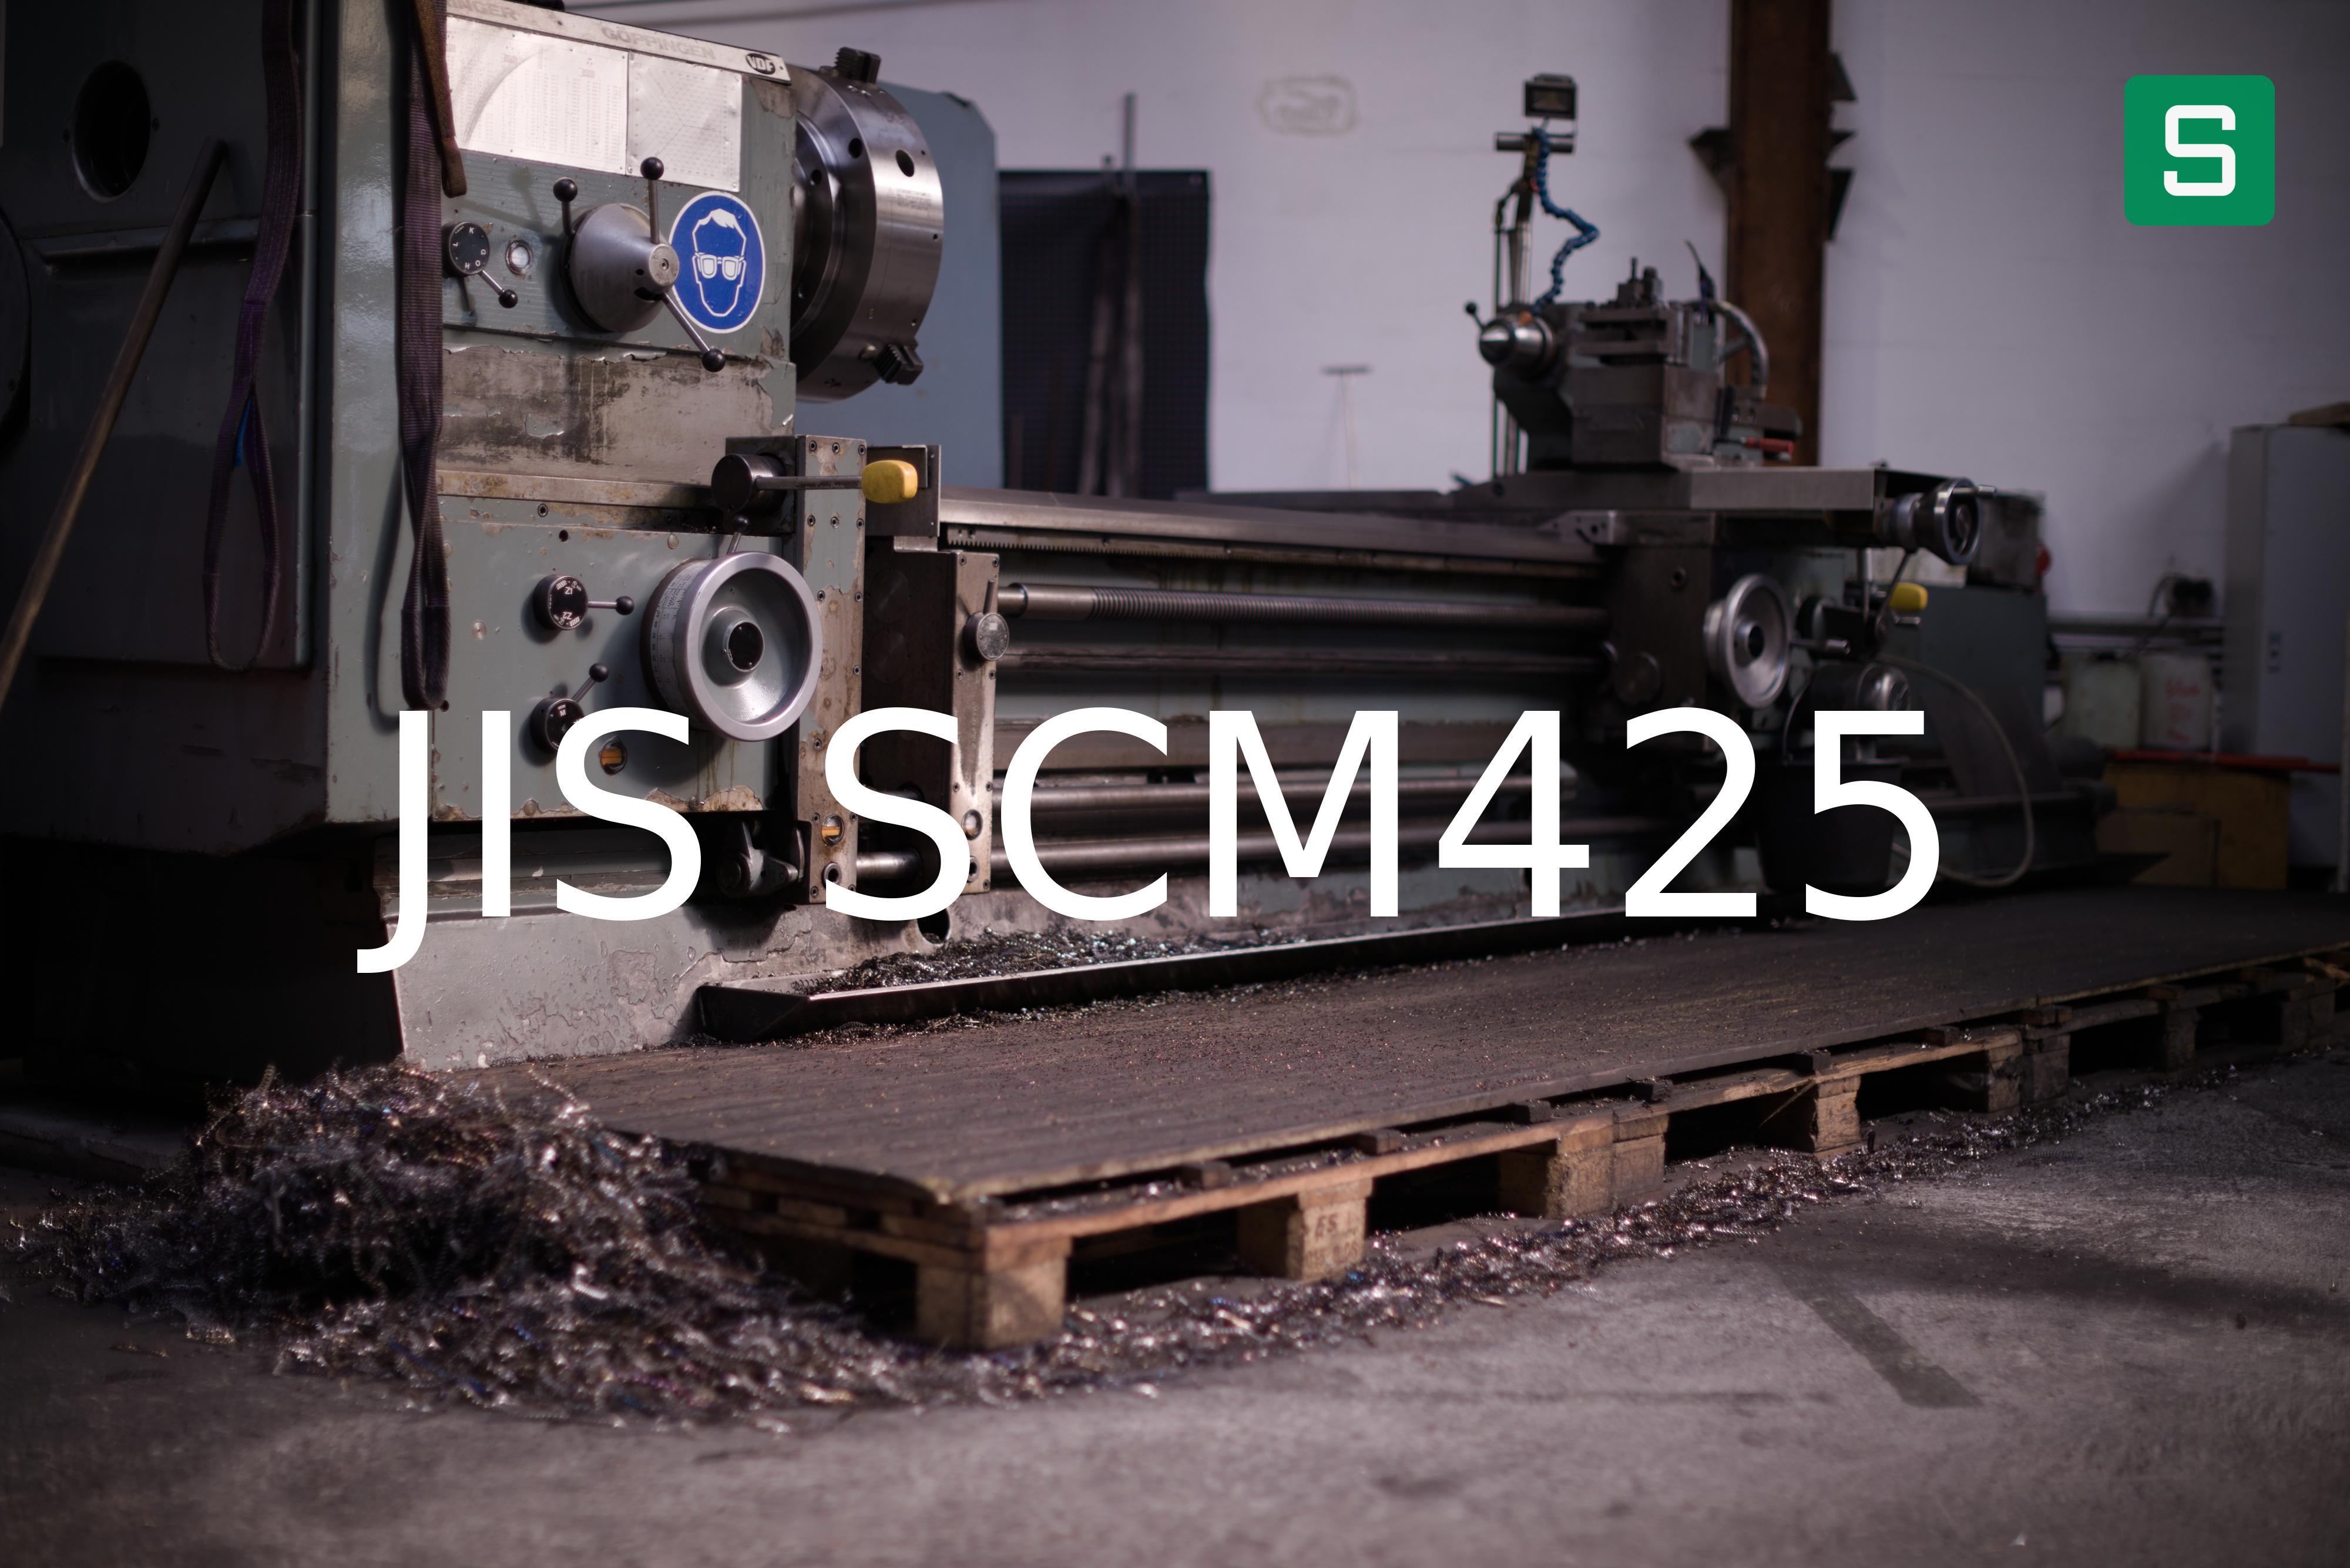 Steel Material: JIS SCM425